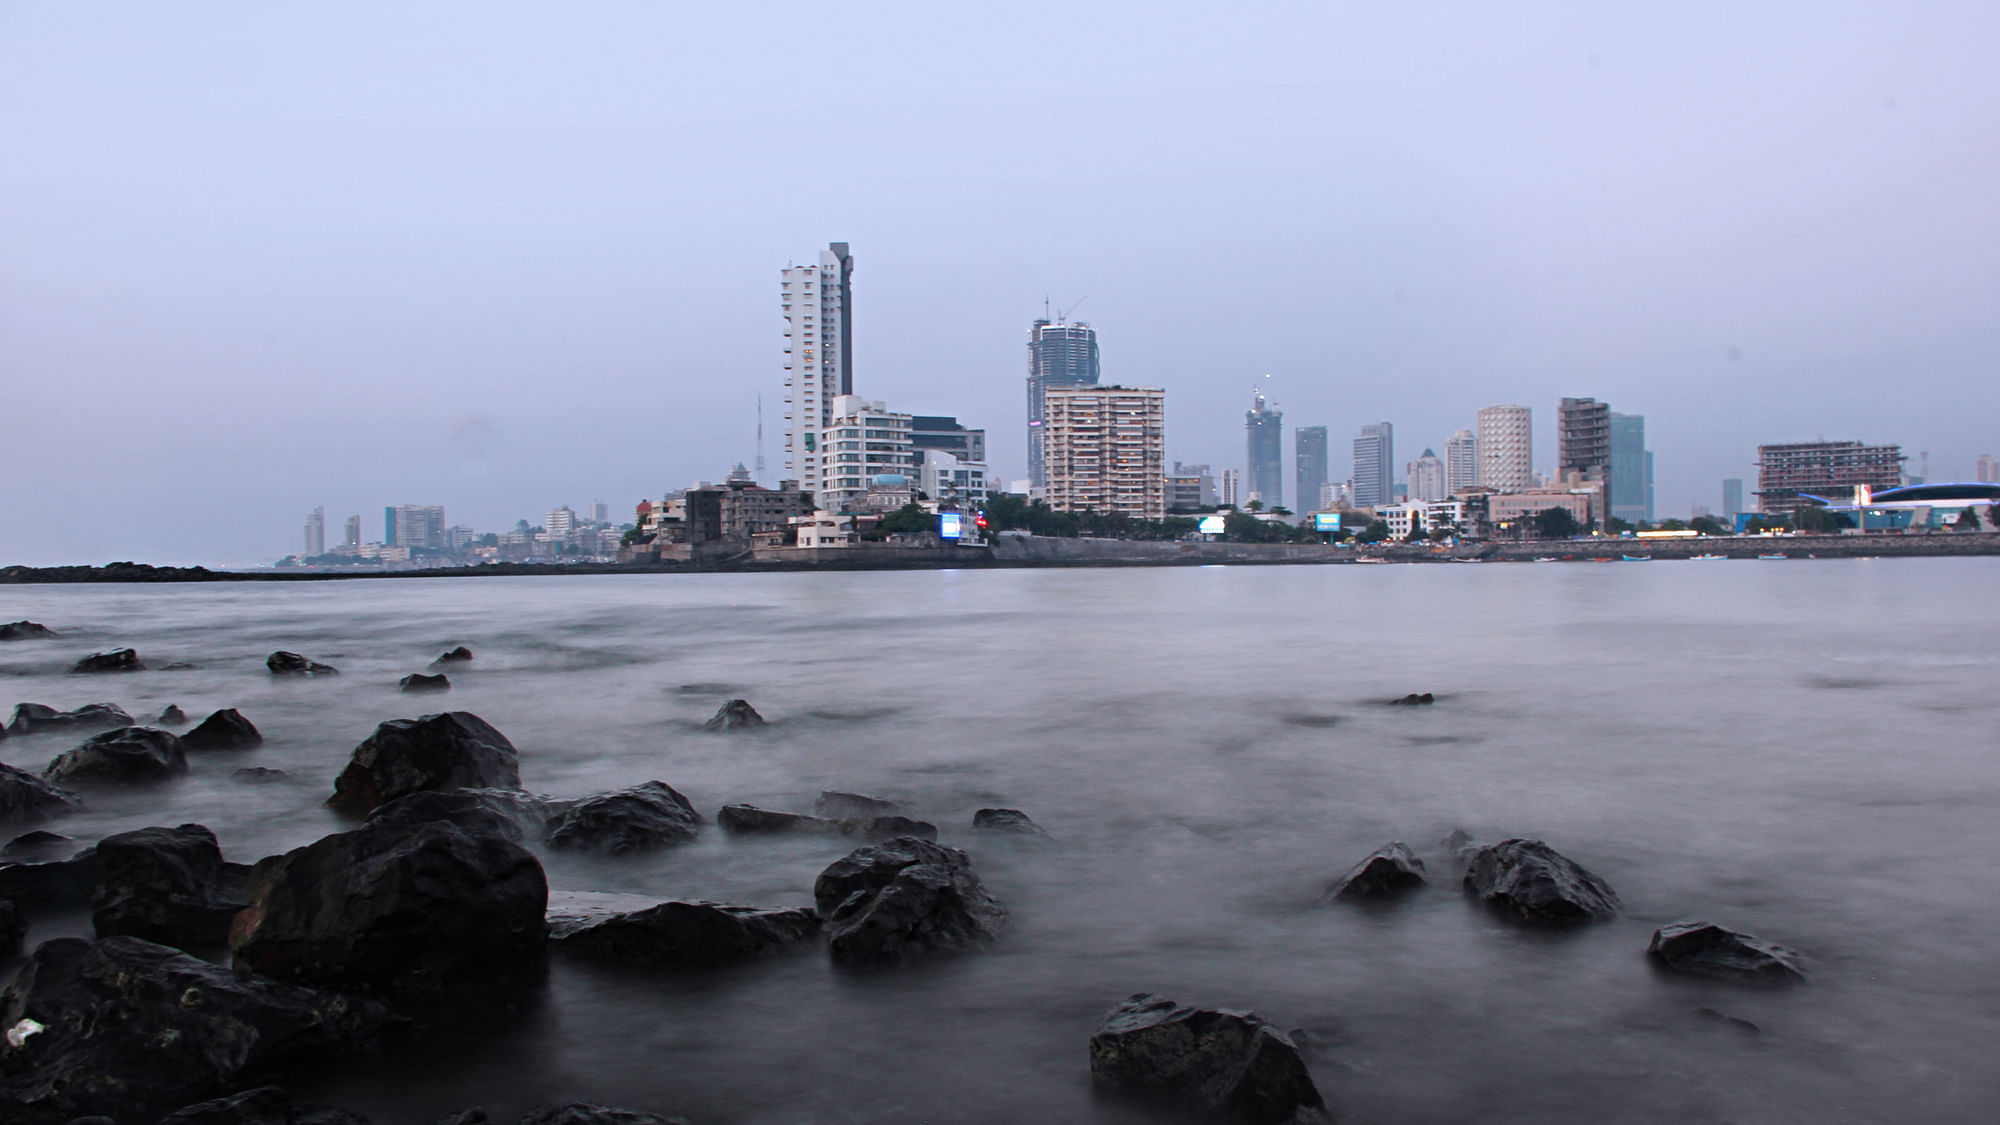  Mumbai Skyline as seen from Haji Ali Dargah.&nbsp;